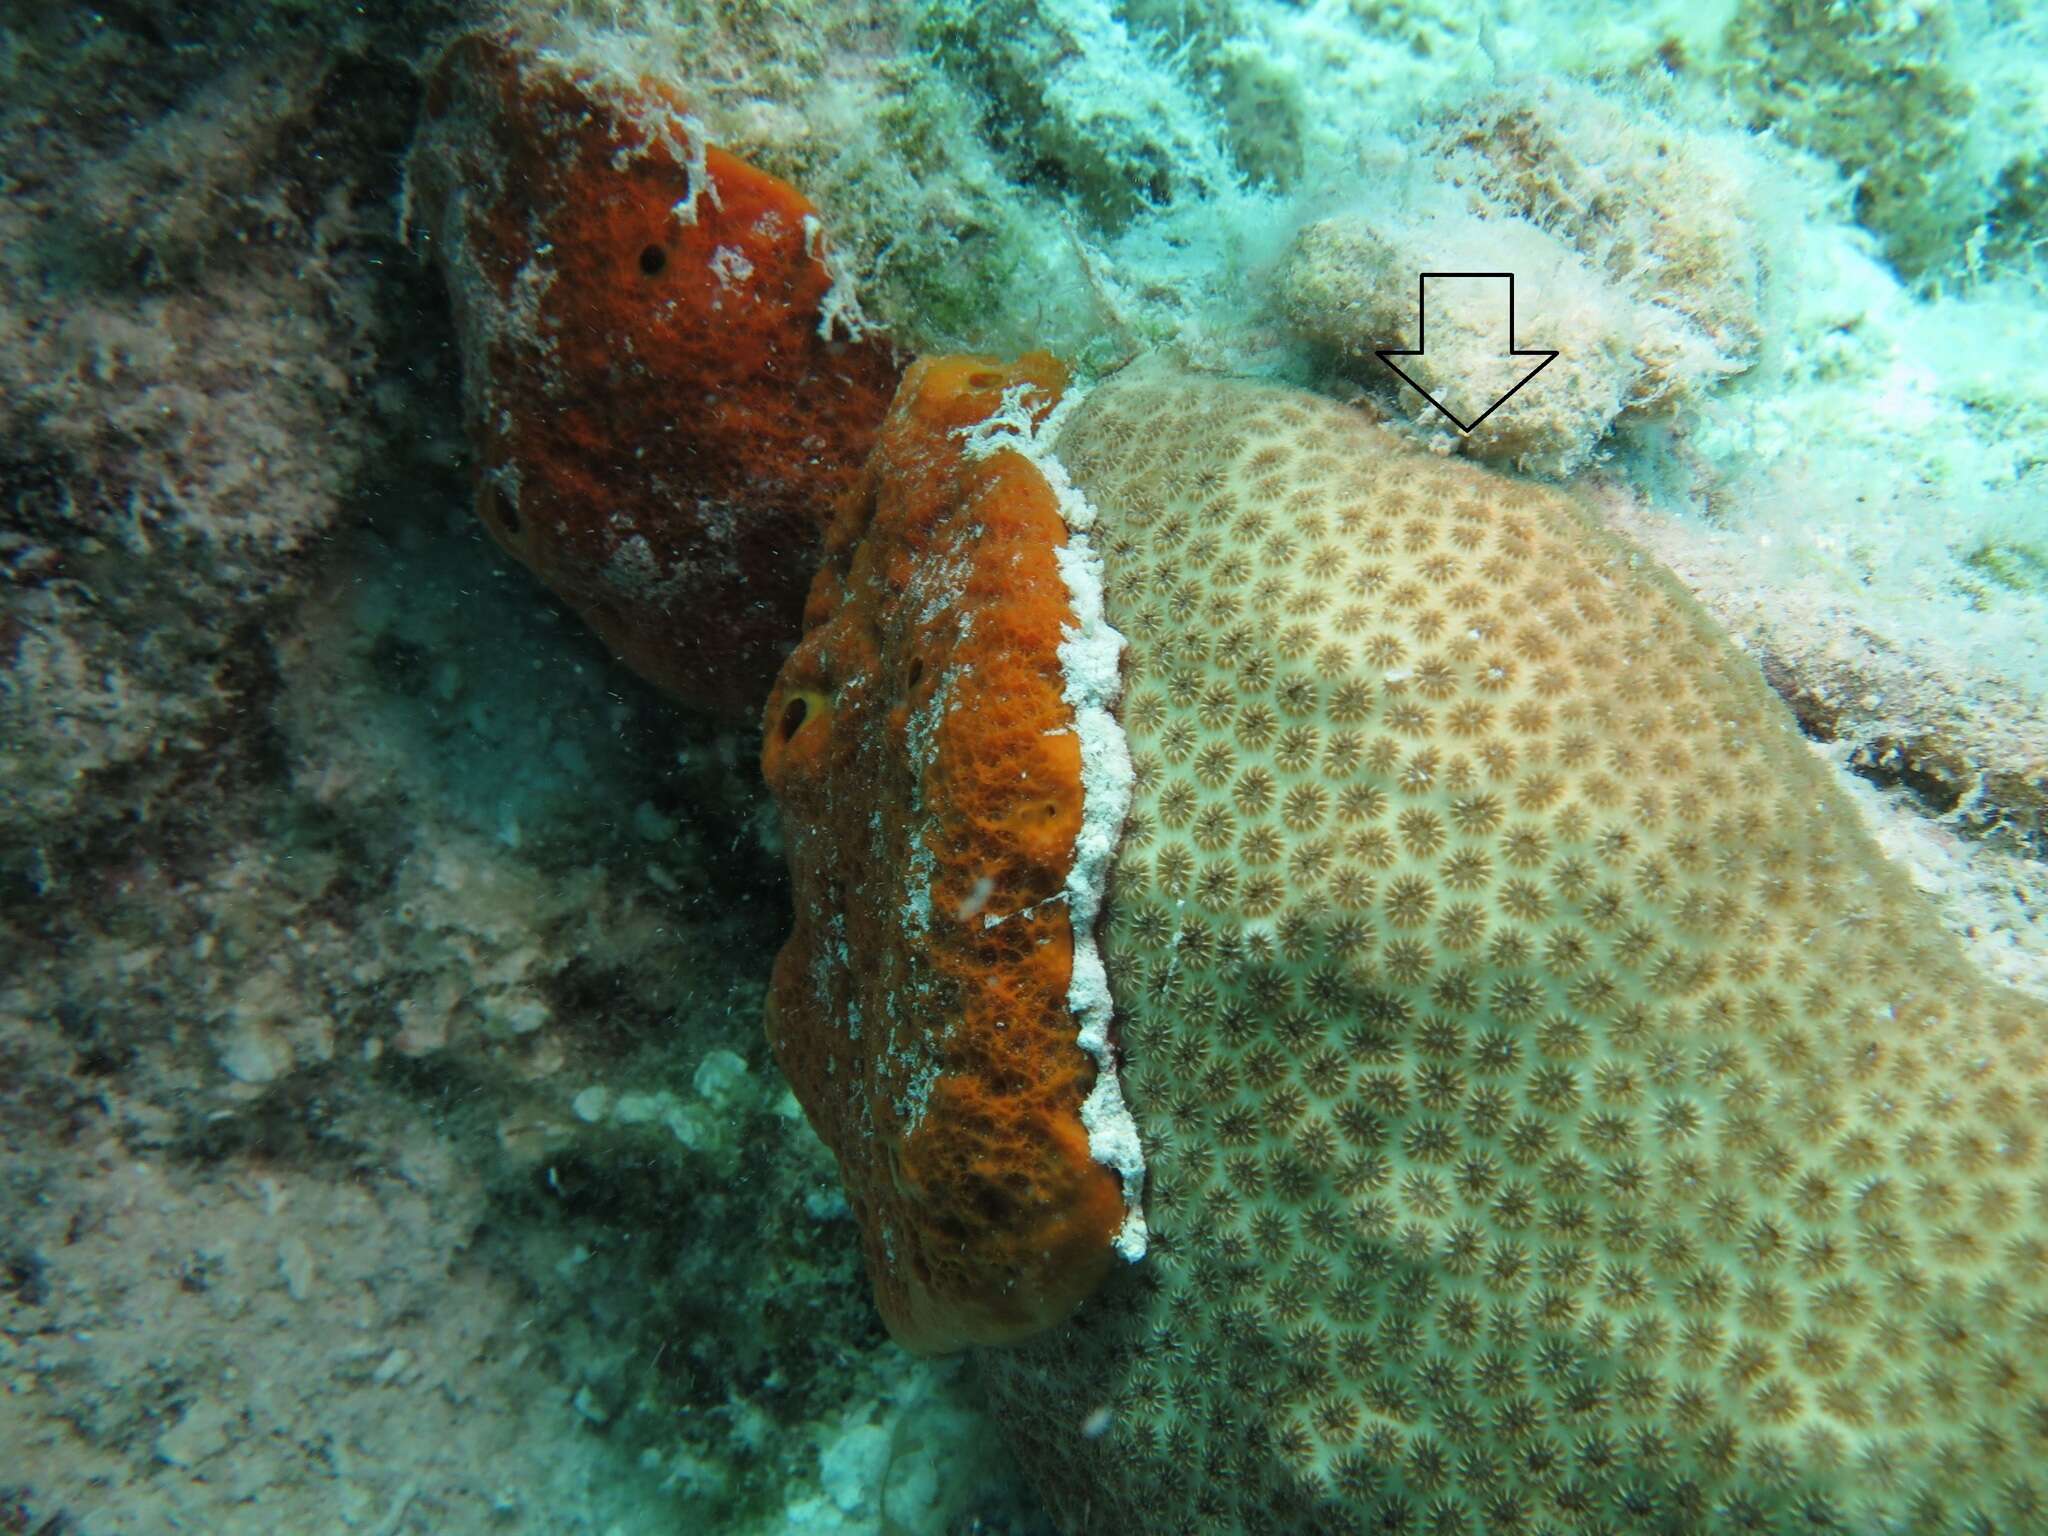 Image of Blushing Star Coral